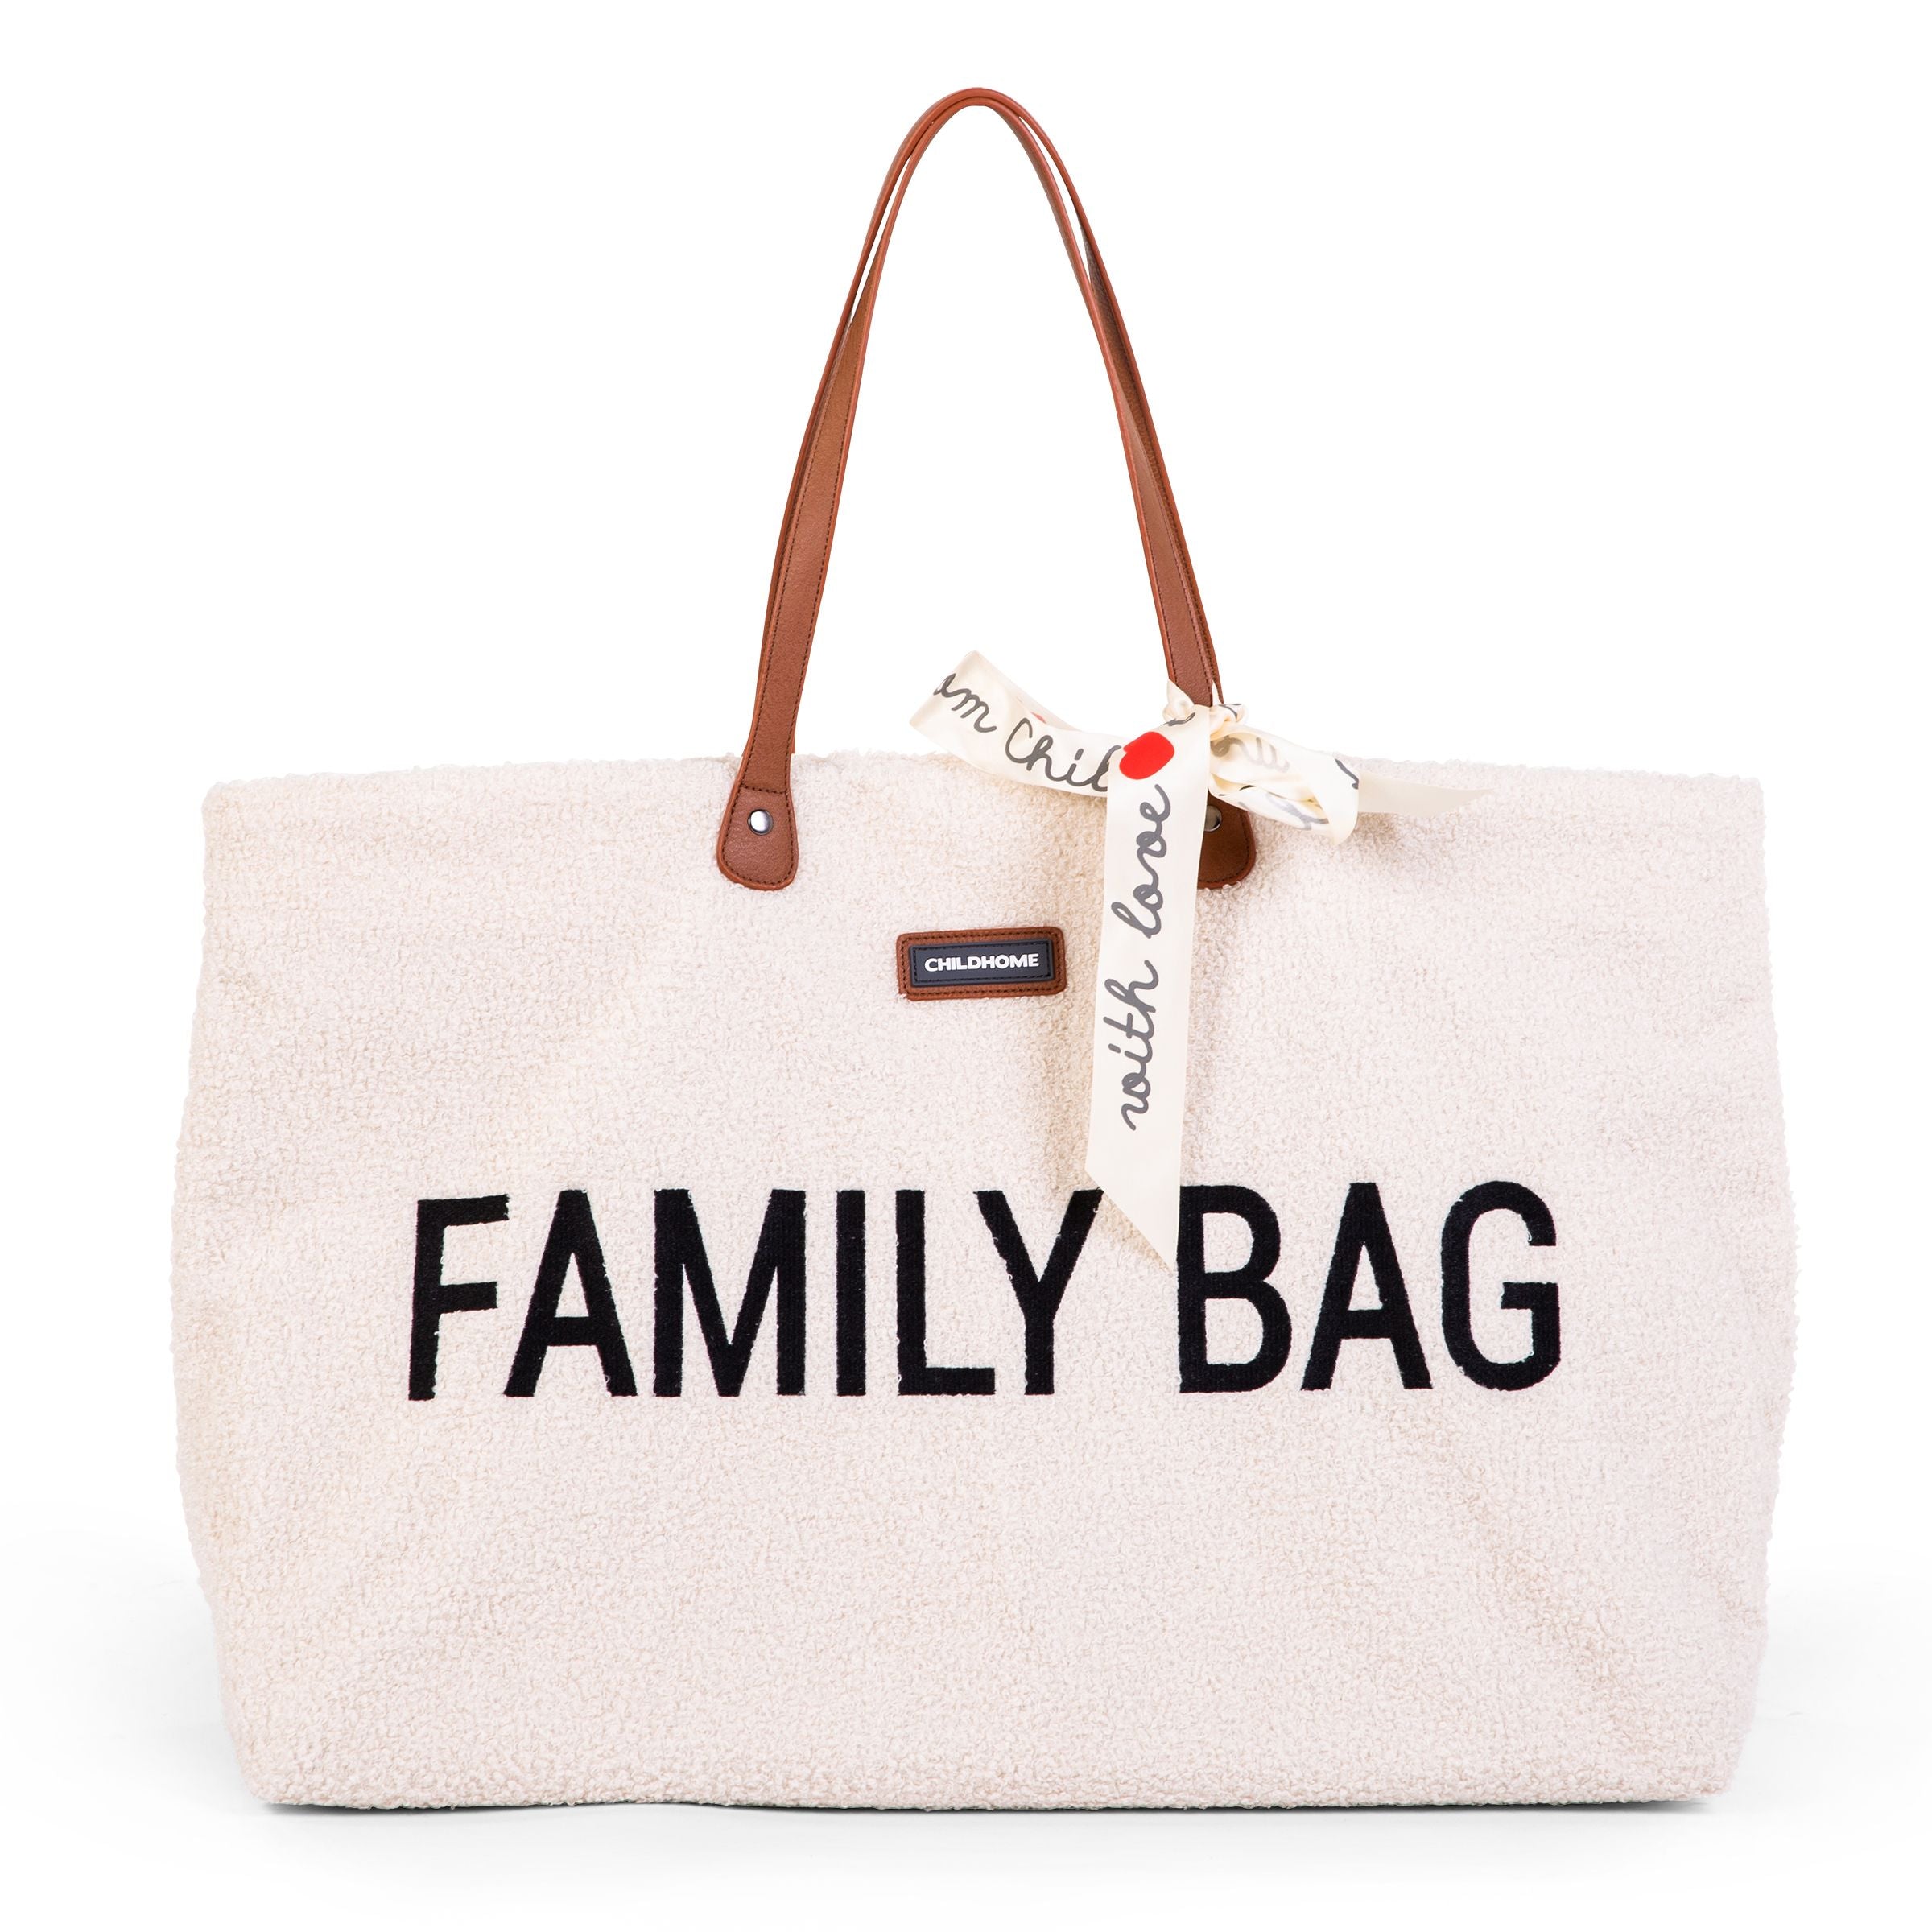 Sac Week-End “Family Bag” - Toiles Chics